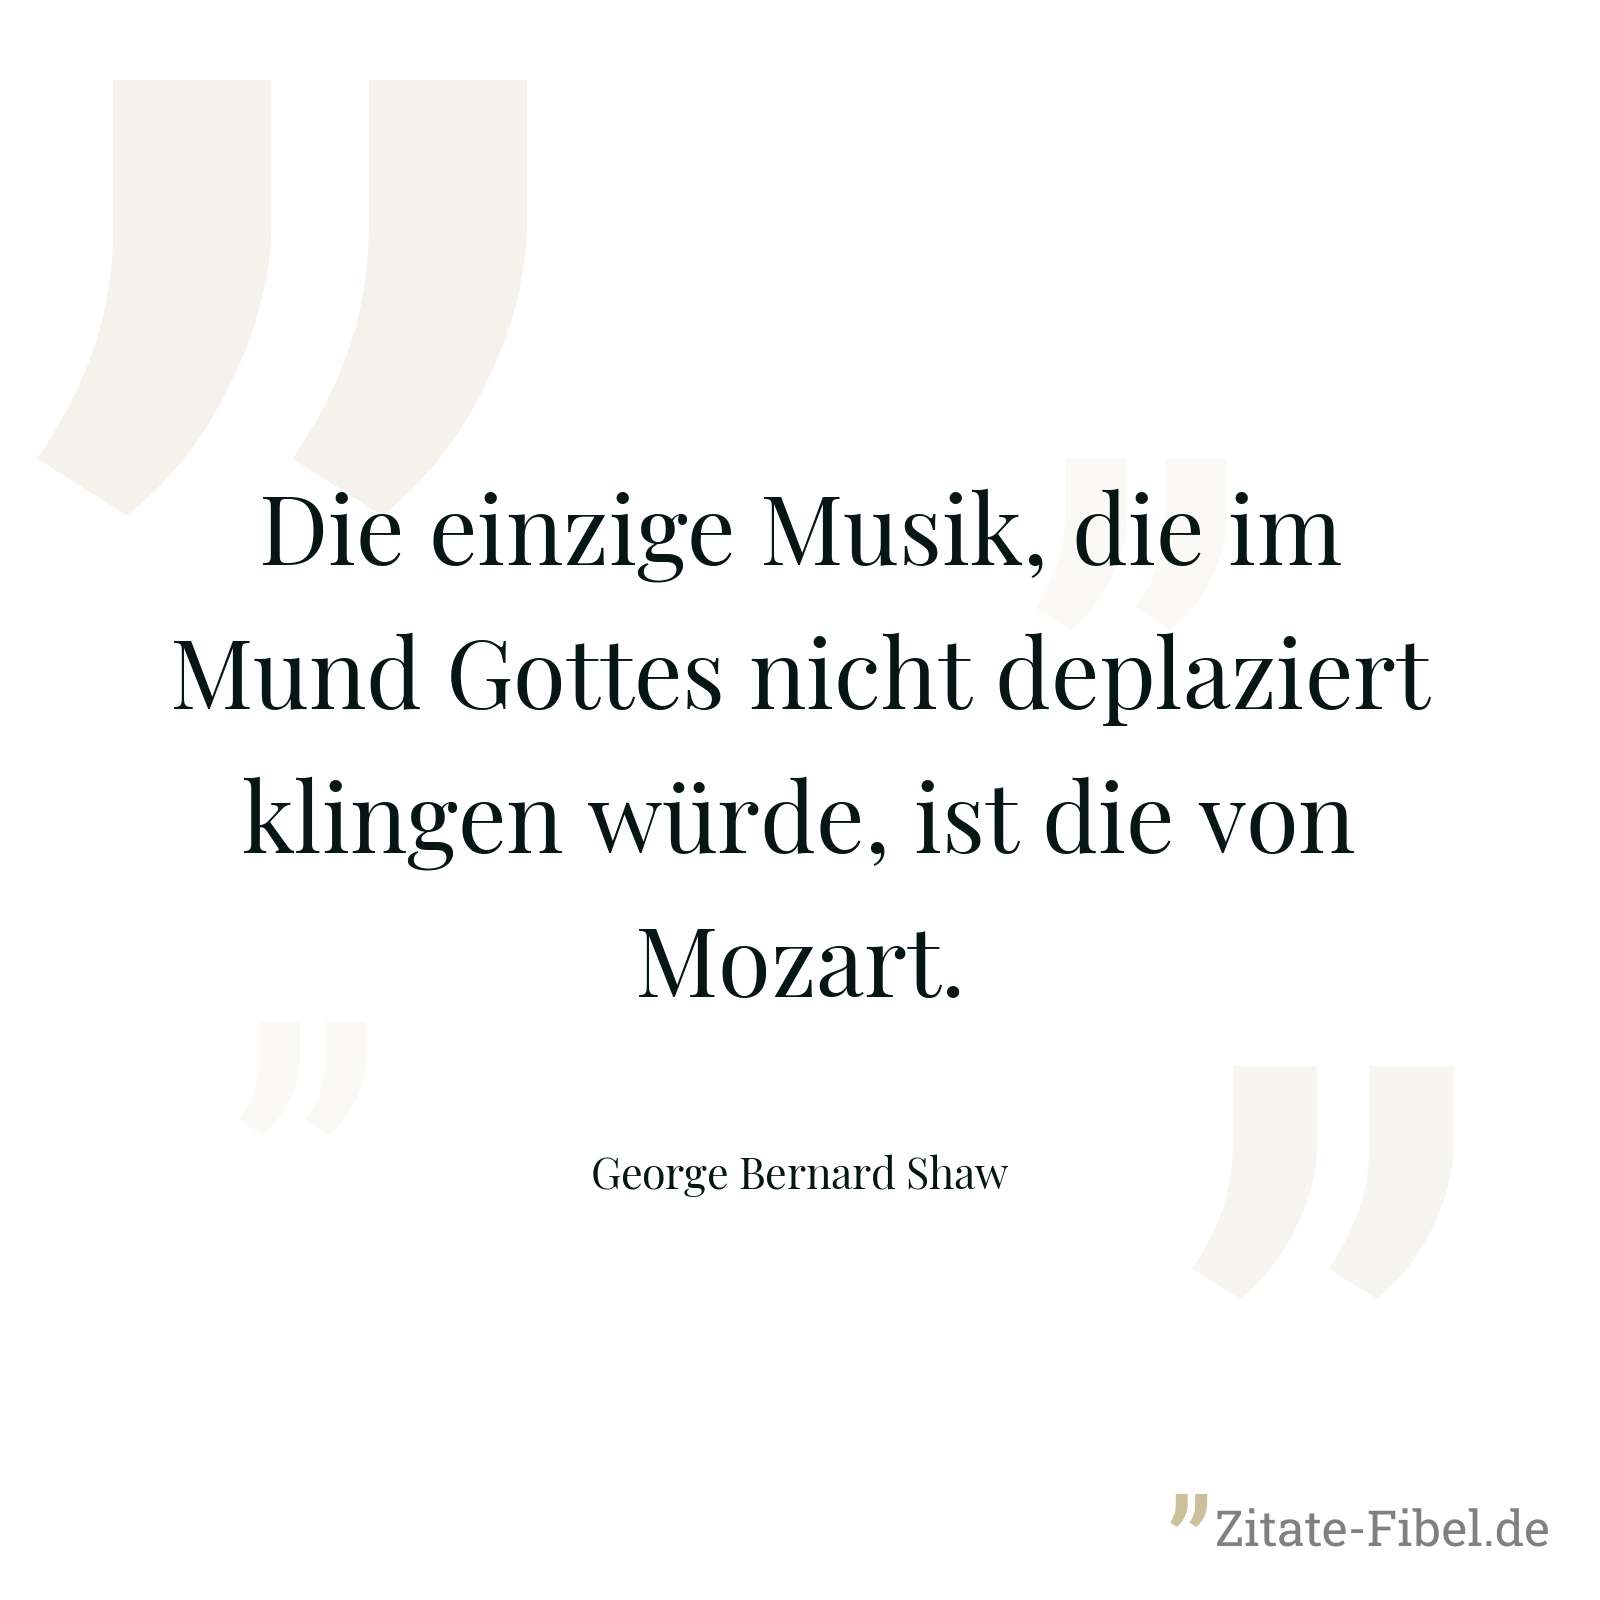 Die einzige Musik, die im Mund Gottes nicht deplaziert klingen würde, ist die von Mozart. - George Bernard Shaw